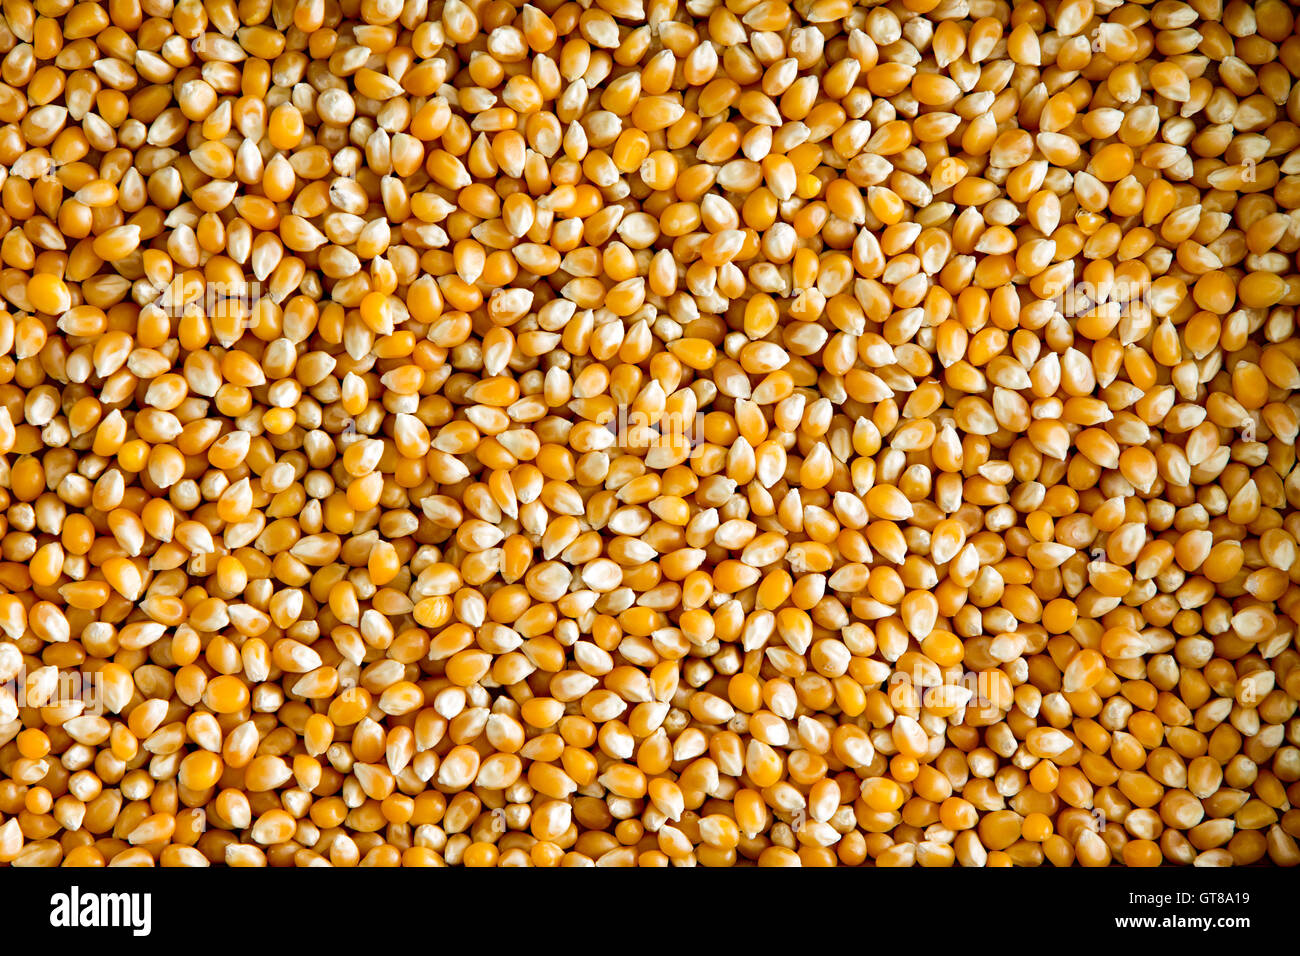 Vue d'arrière-plan des frais généraux d'une couche de grains de maïs ou de maïs séché, un d'une céréale riche en fibres et en amidon Banque D'Images